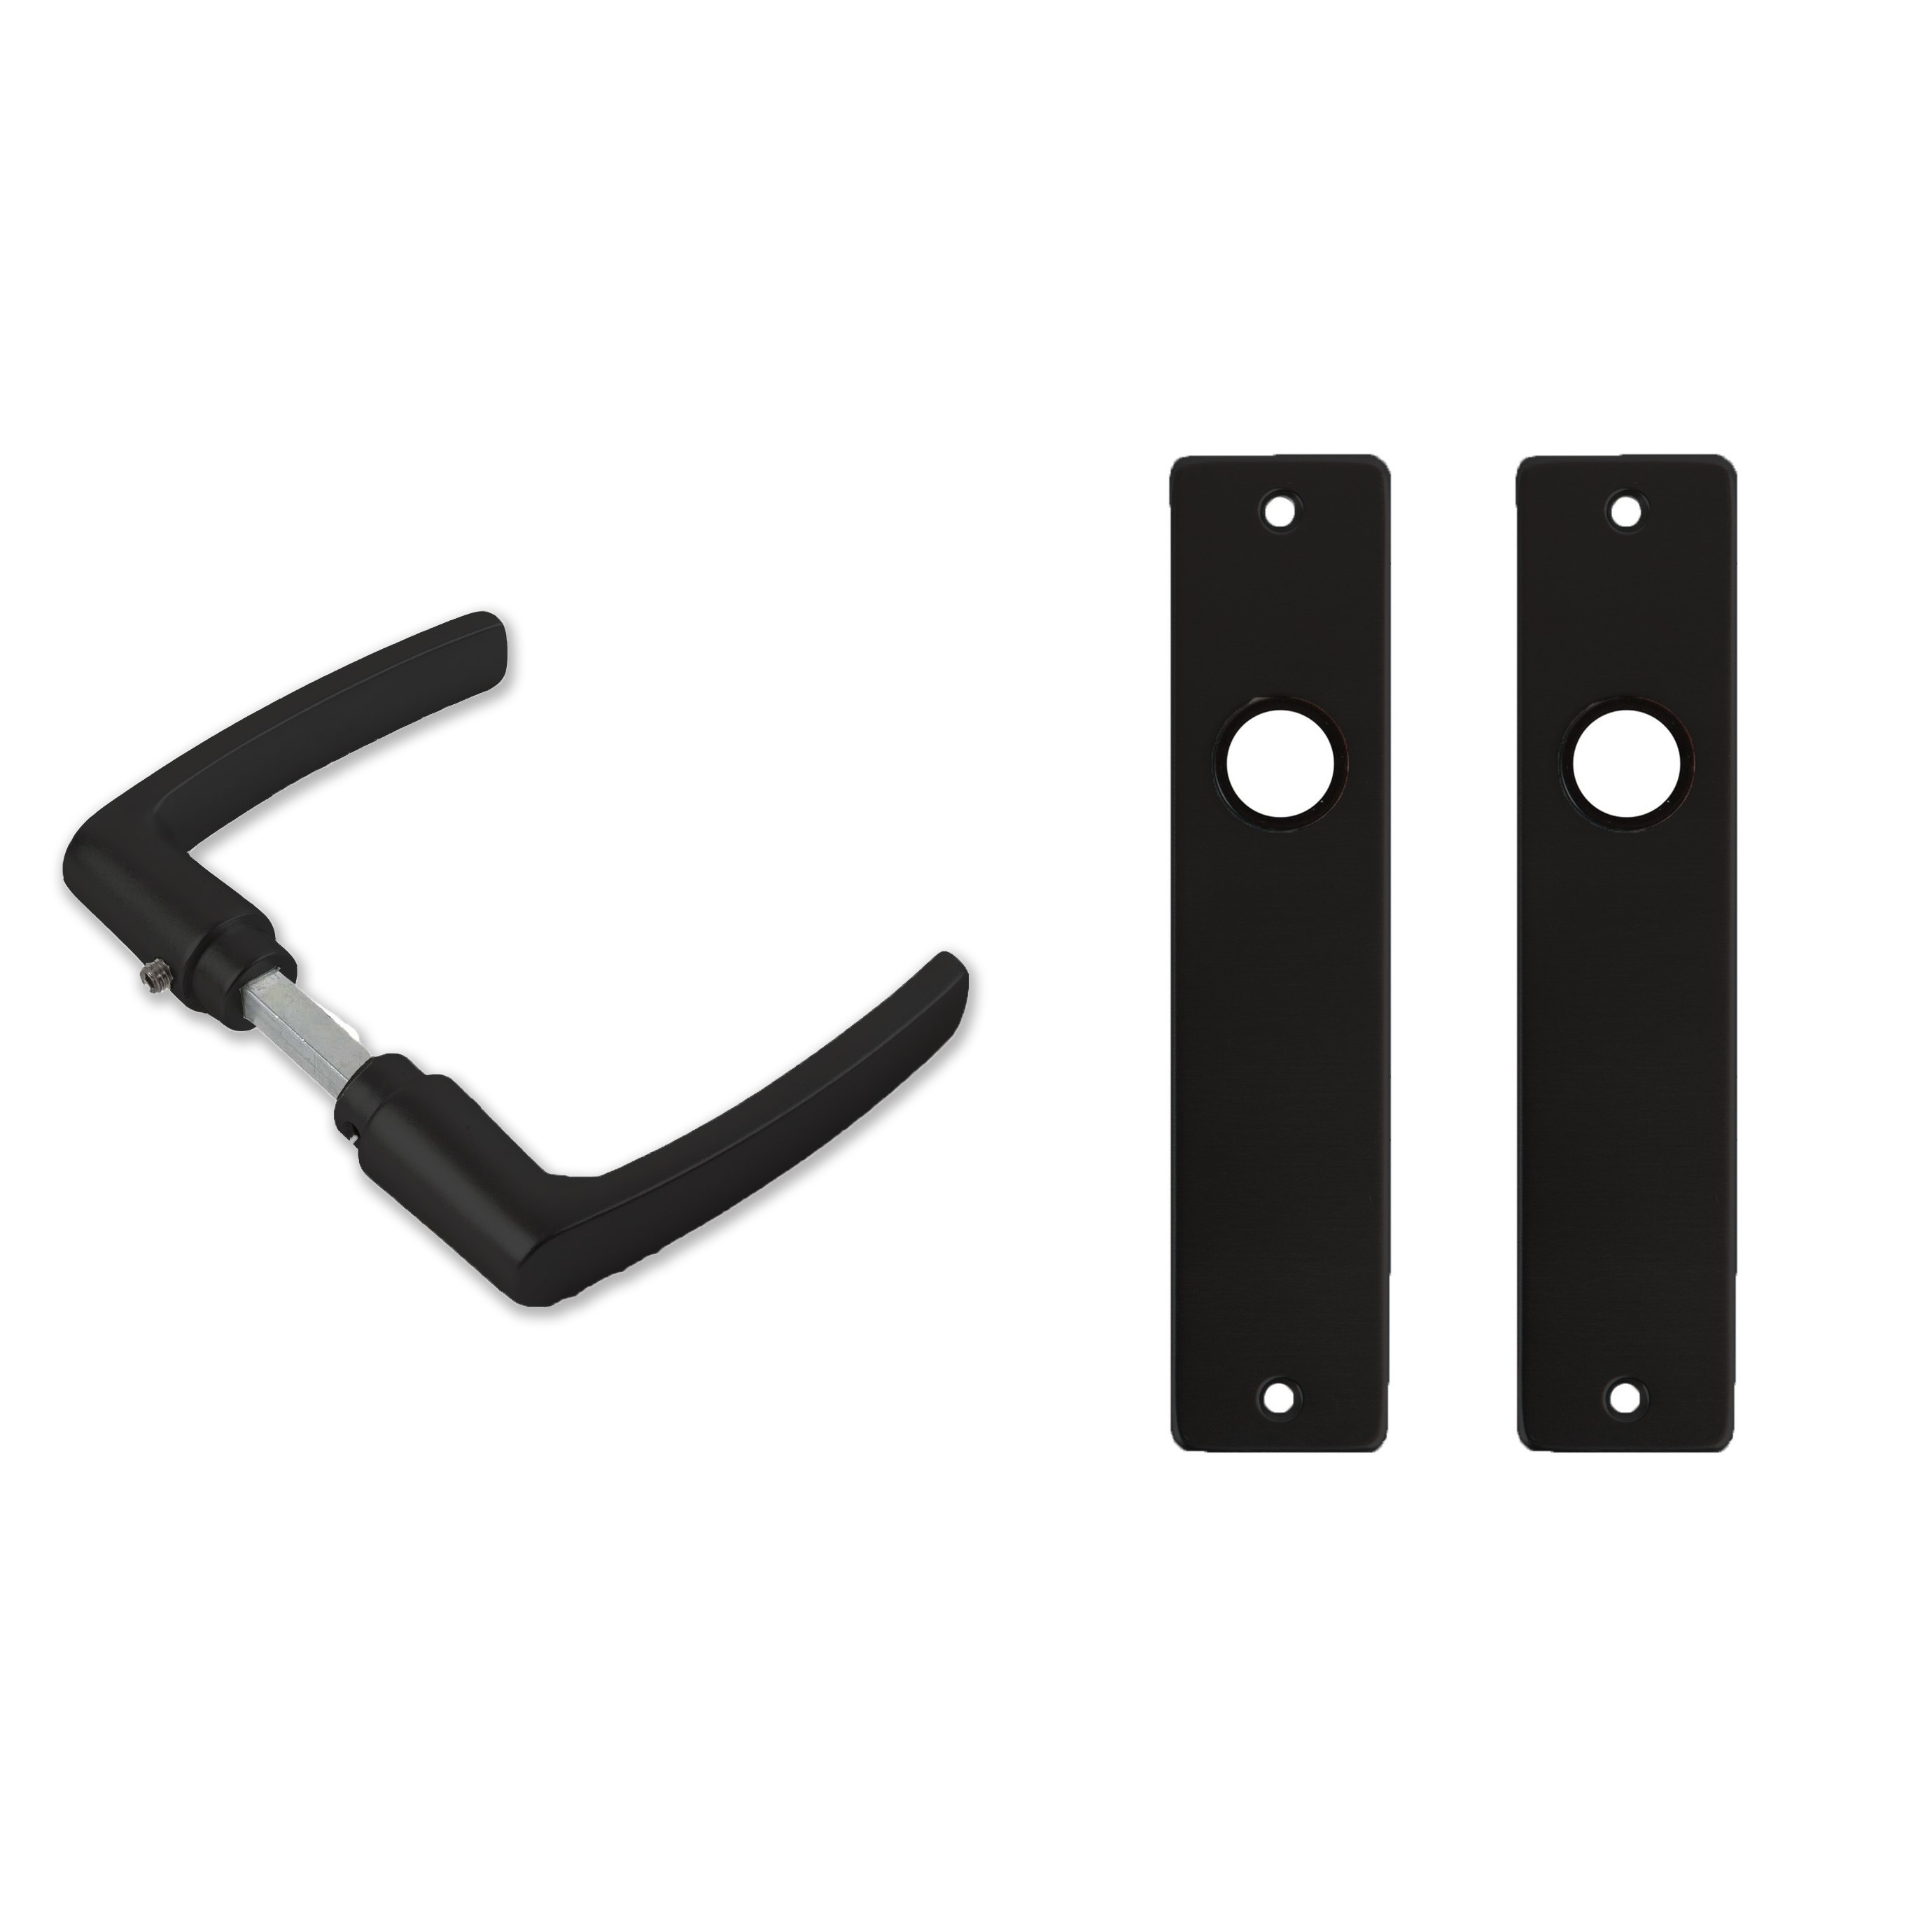 1x paar deurkrukset-deurgarnituur zwart met zwarte blokmodel deurklinken en deurschilden